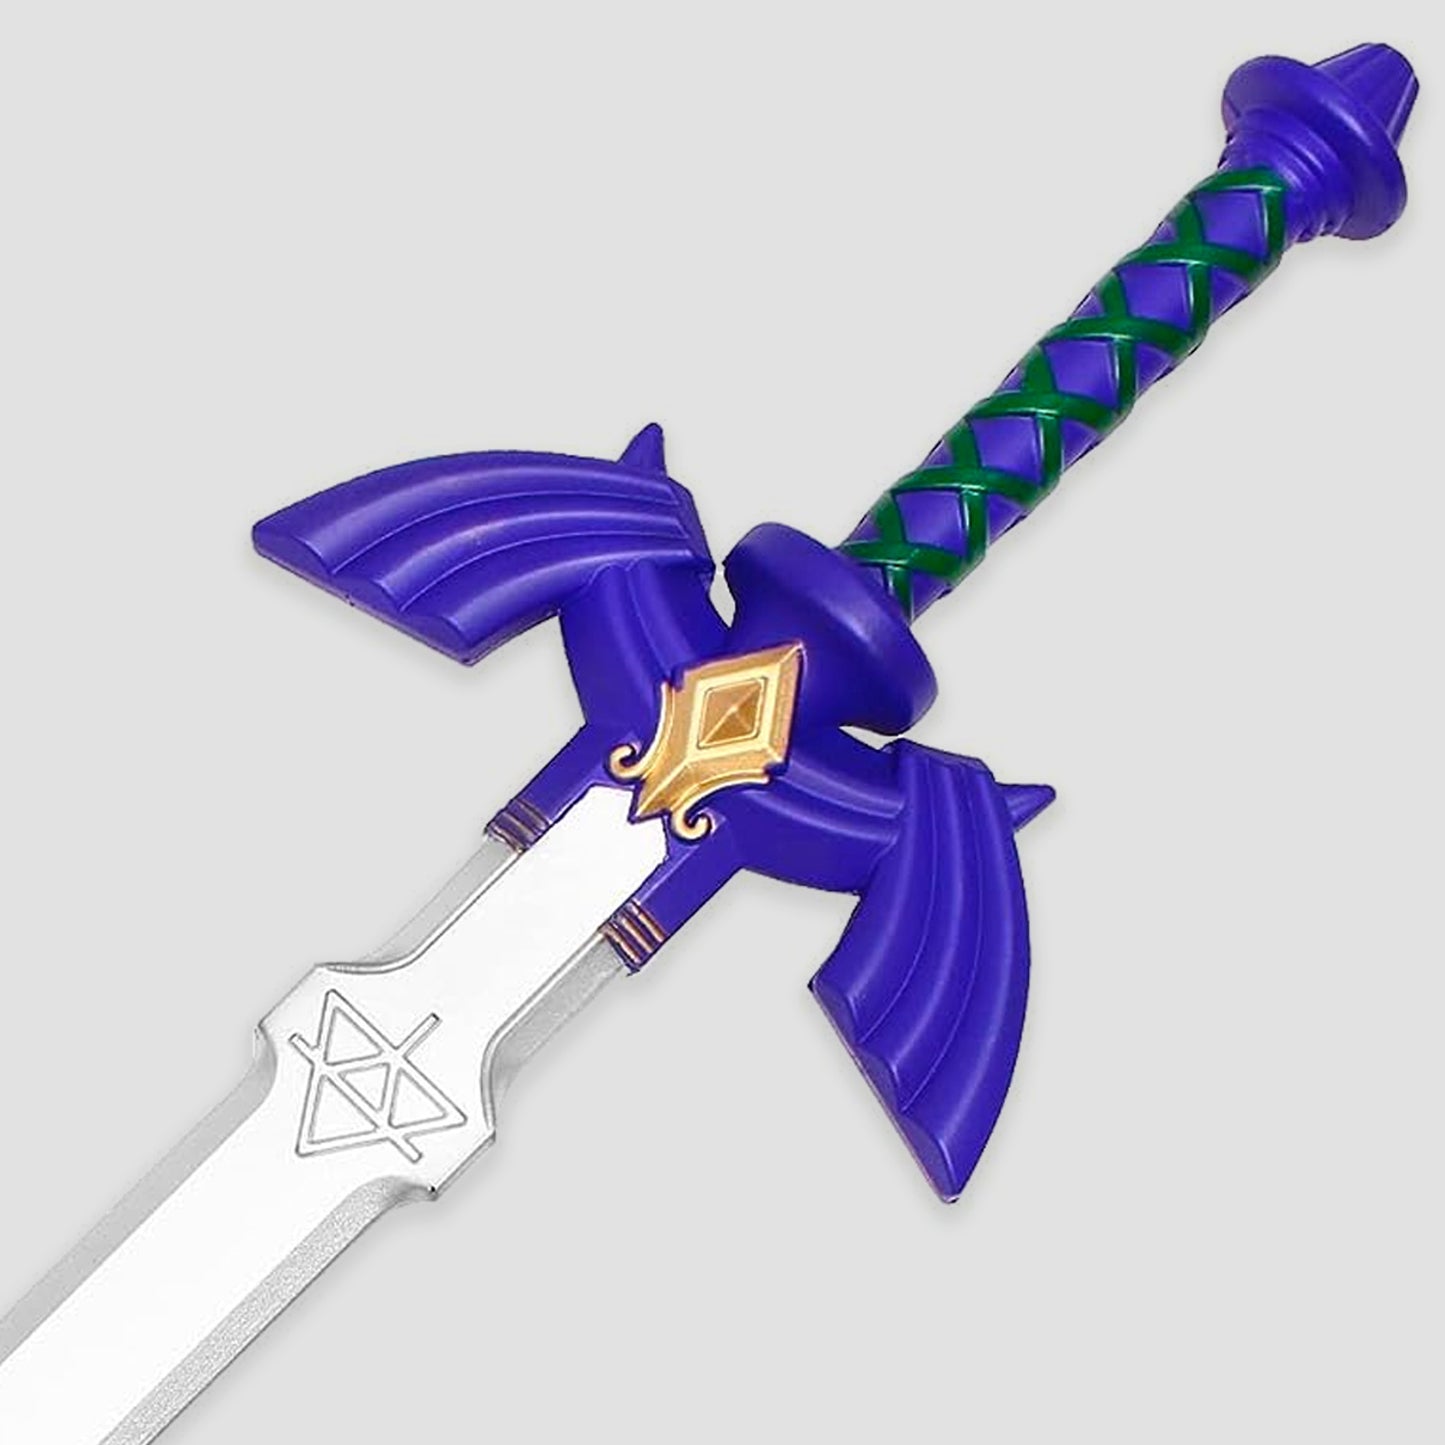 Master Sword & Scabbard (Legend of Zelda) Foam Version Prop Replica Sword